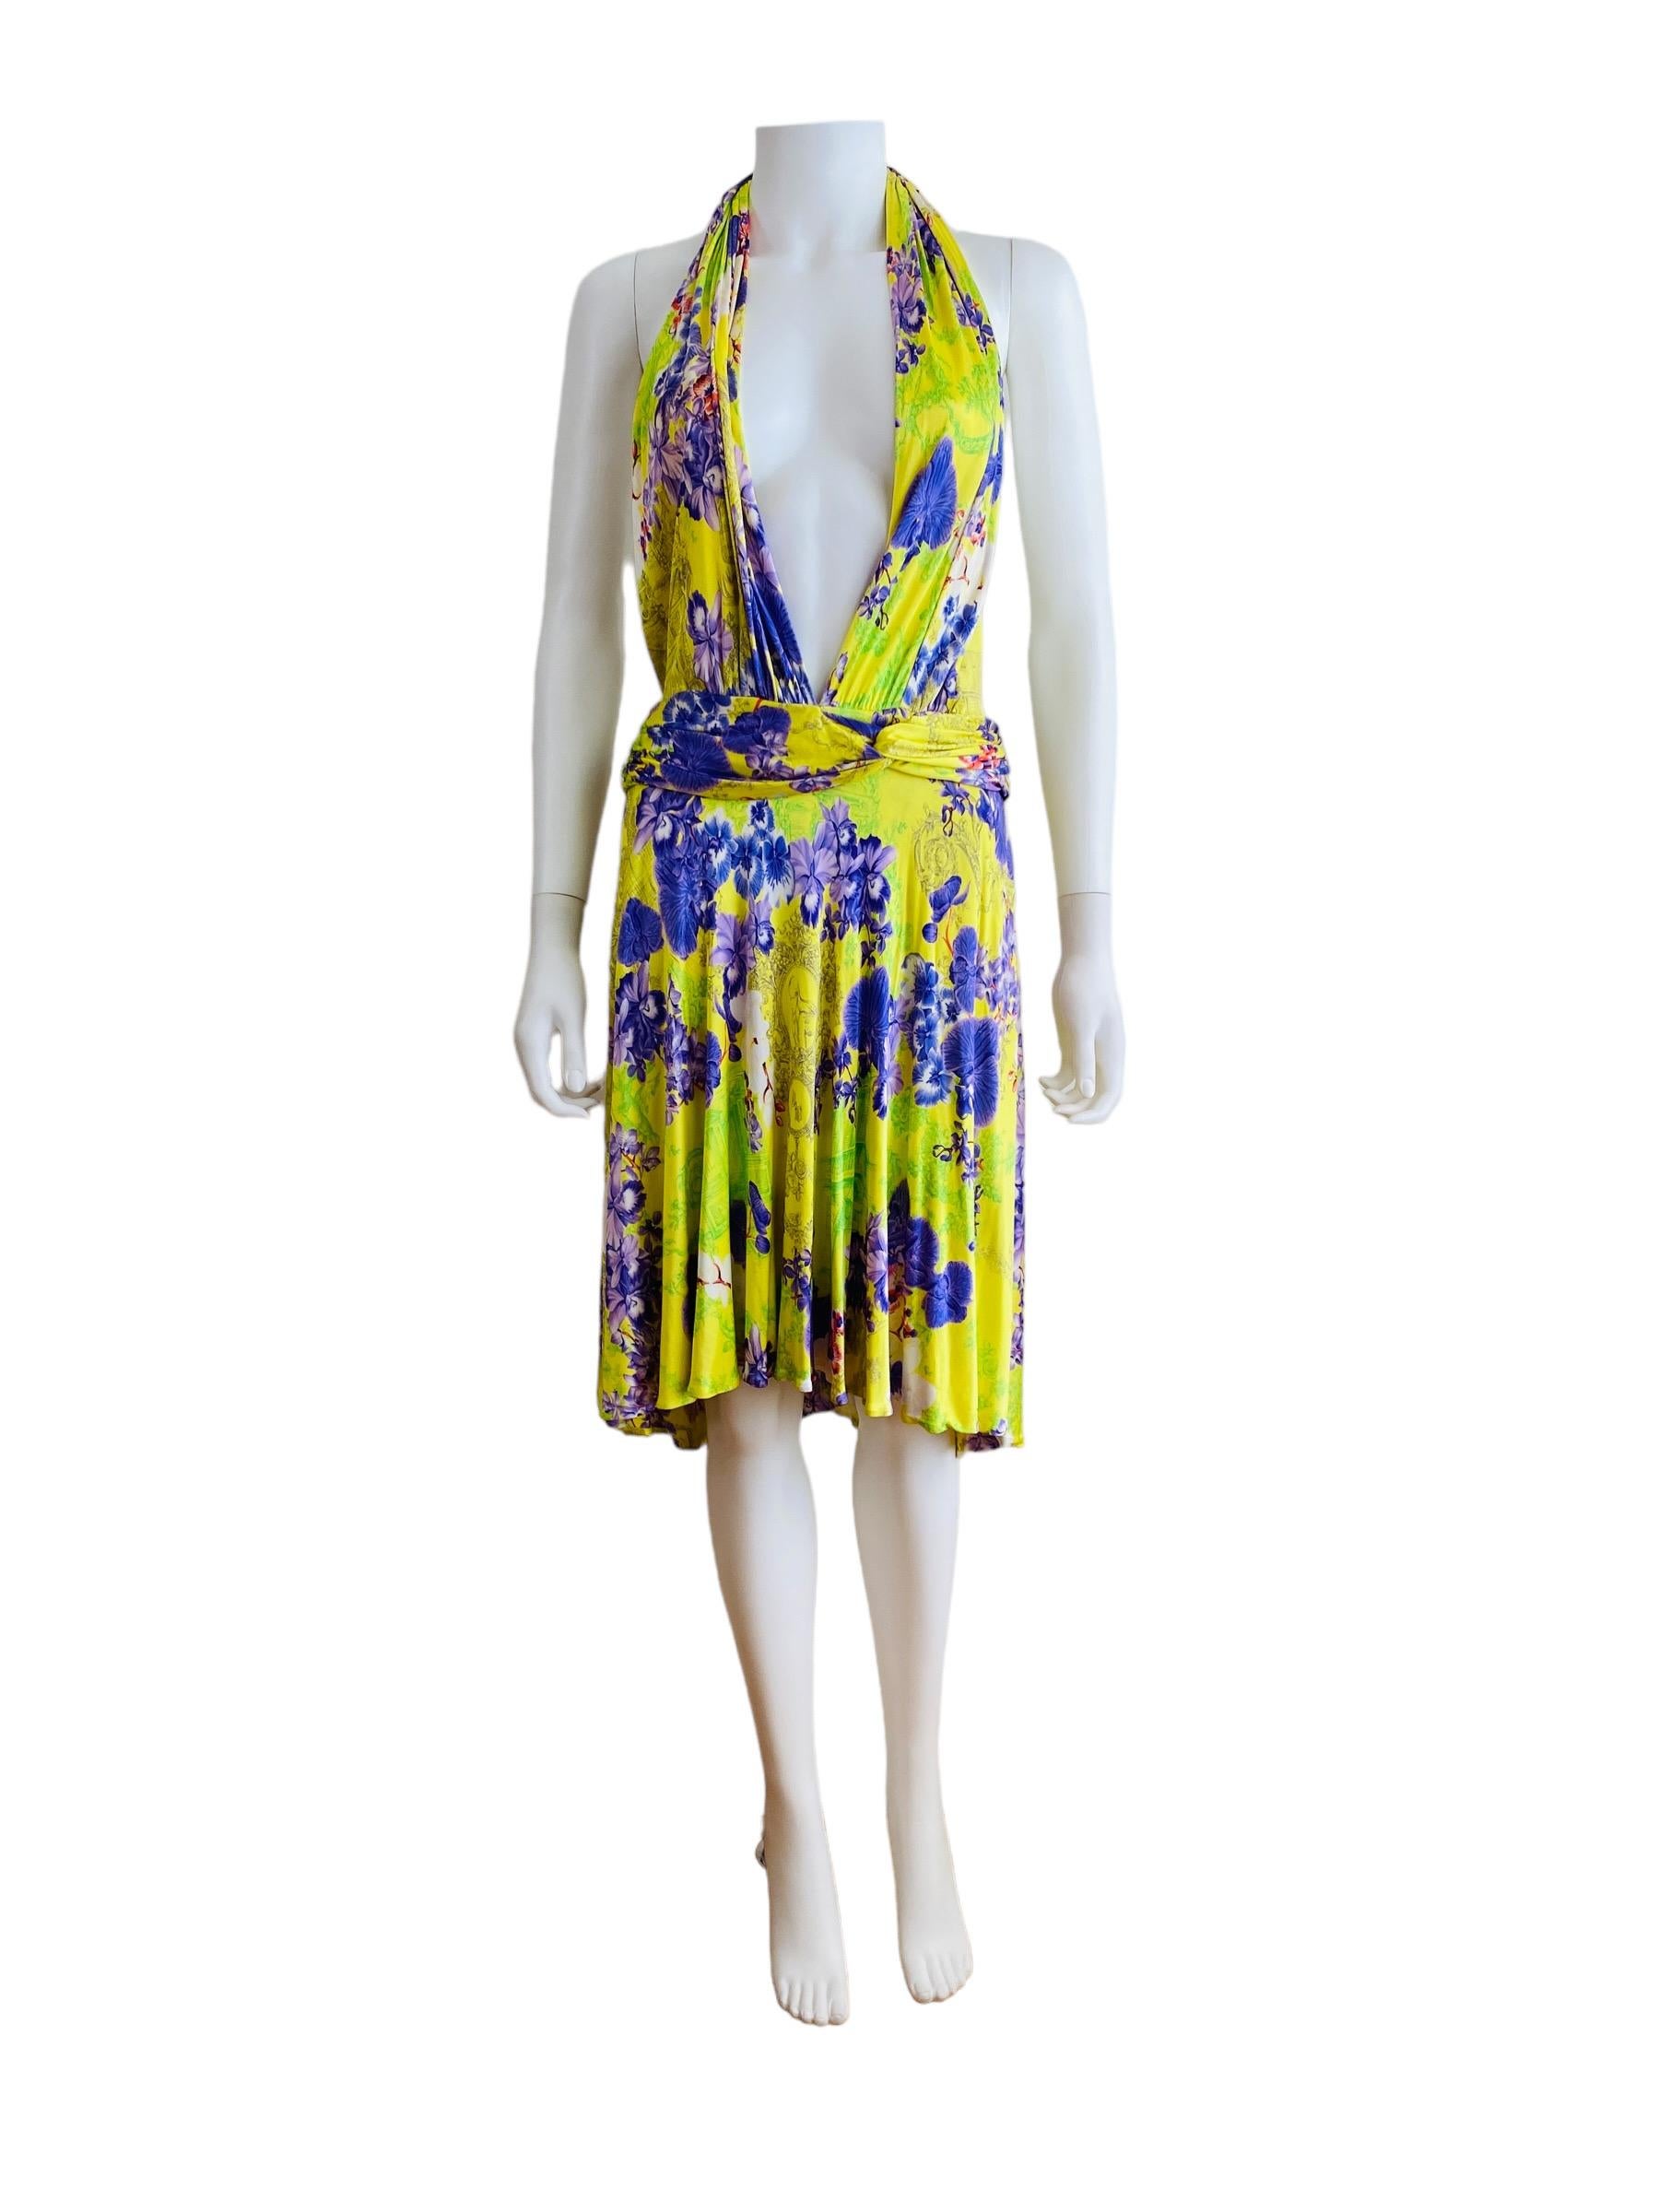 S/S 2004 Versace Kleid
Kühnes, leuchtendes Neongelb mit übergroßem Toilettentuch und lilafarbenem Orchideenblumendruck
Tiefes Dekolleté im Neckholder-Stil, auf Wunsch mit voll bedeckendem Stoff auf der Büste, Stoff kann auf der Büste gerafft werden